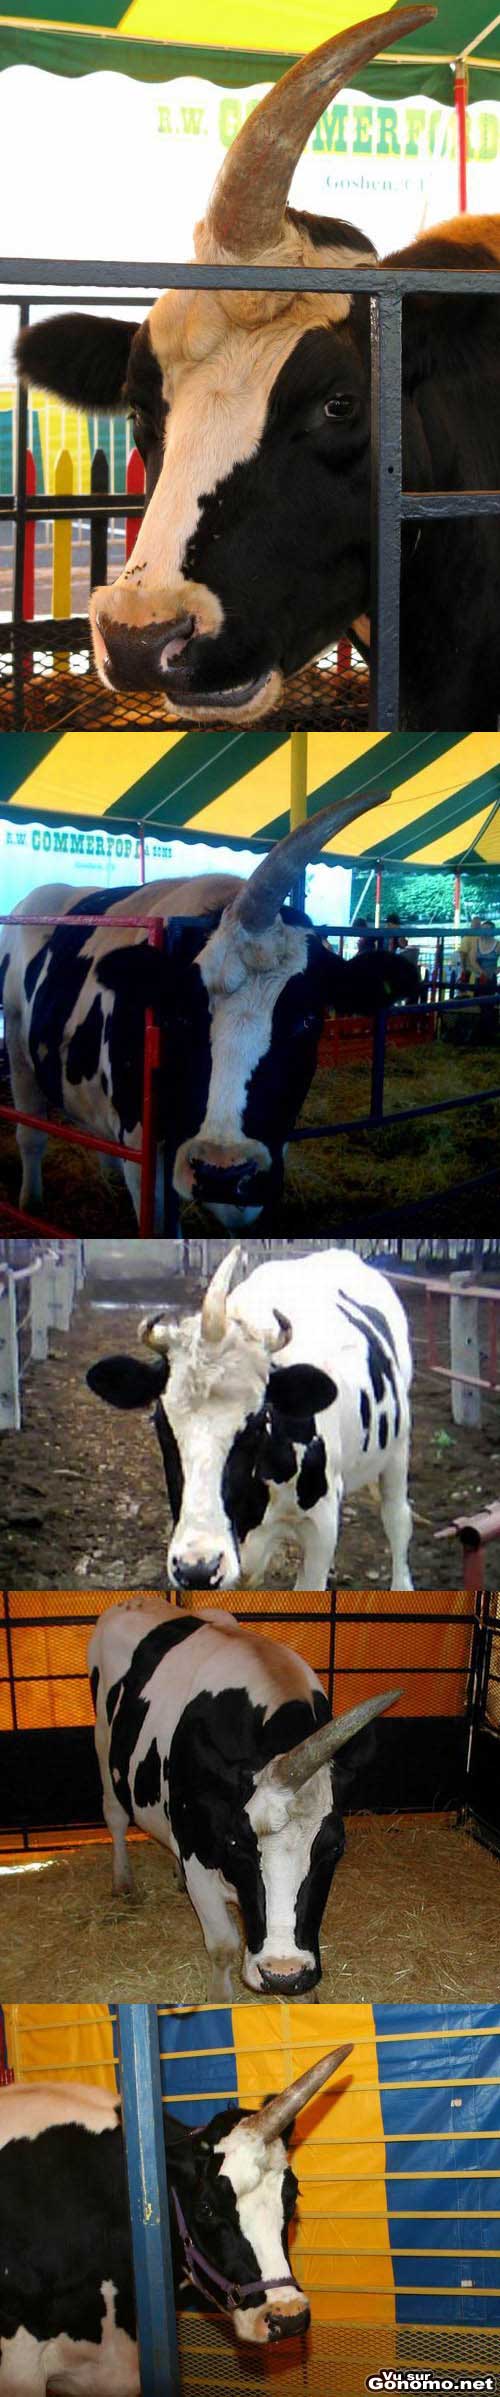 Vache a 3 cornes : une vache etrange avec une corne centrale comme une licorne ??